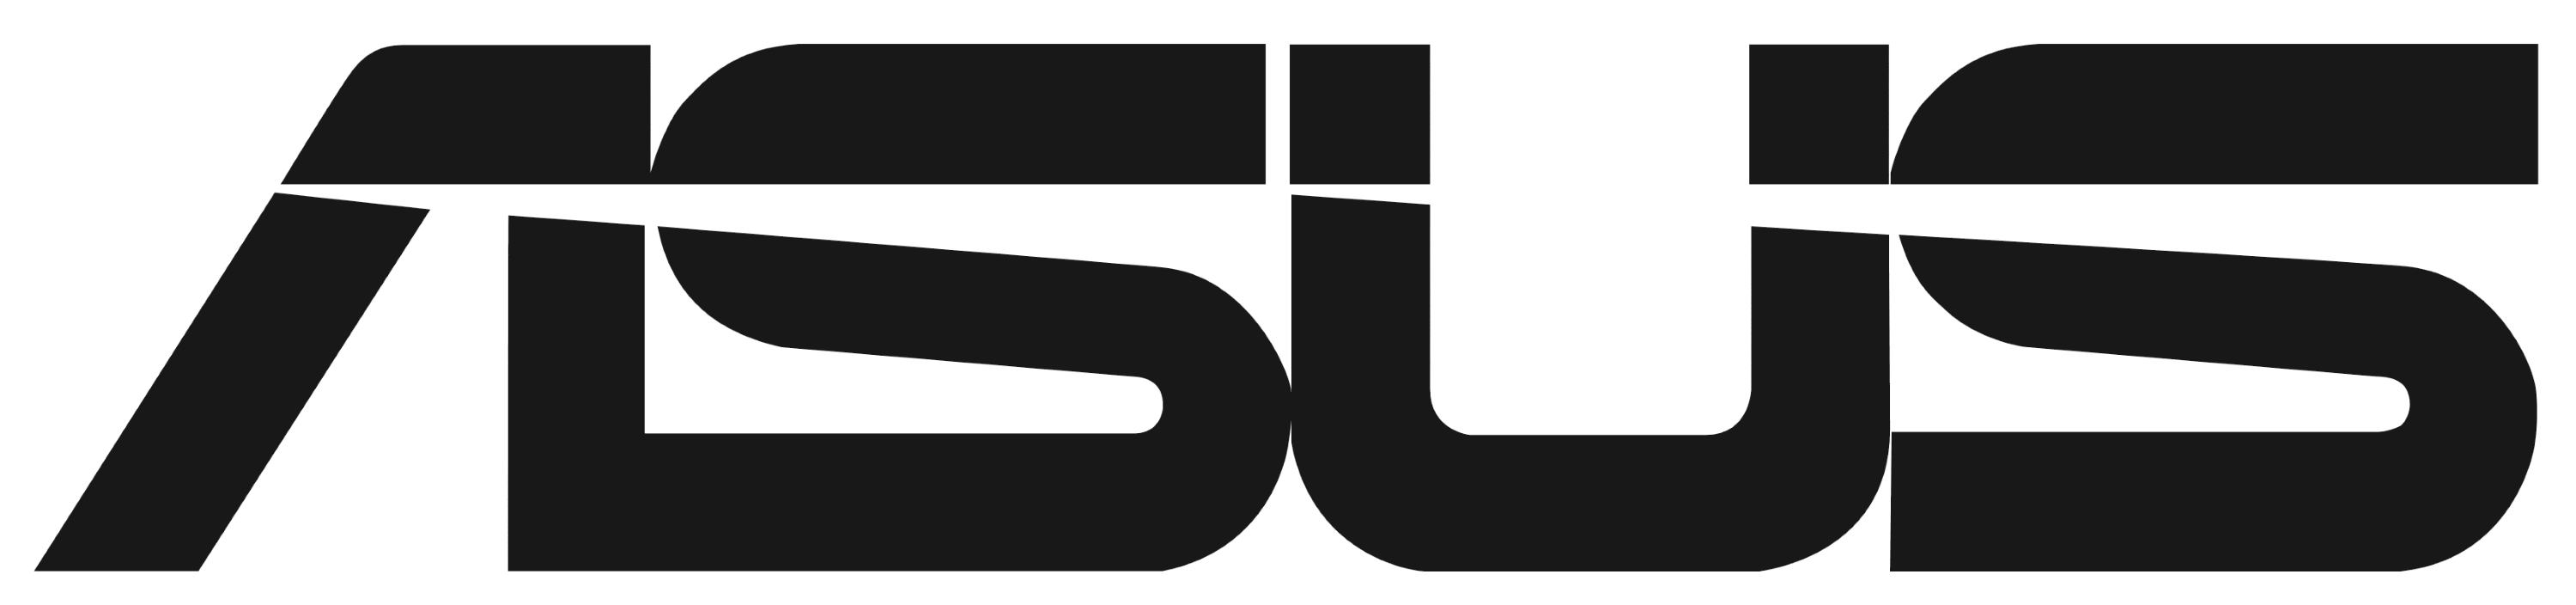 ASUS-logo